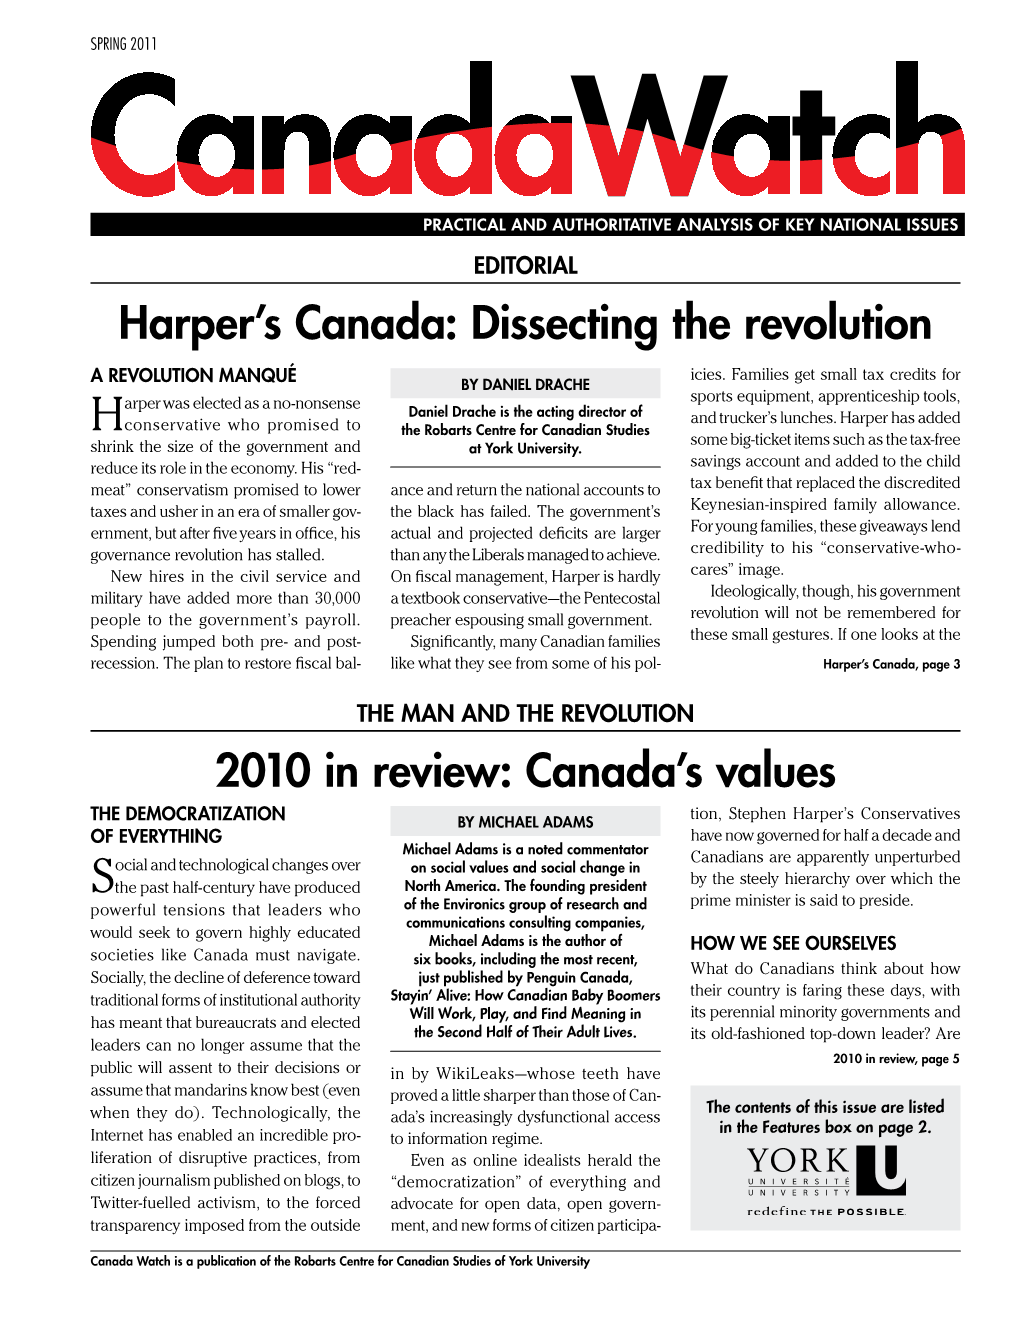 Harper's Canada